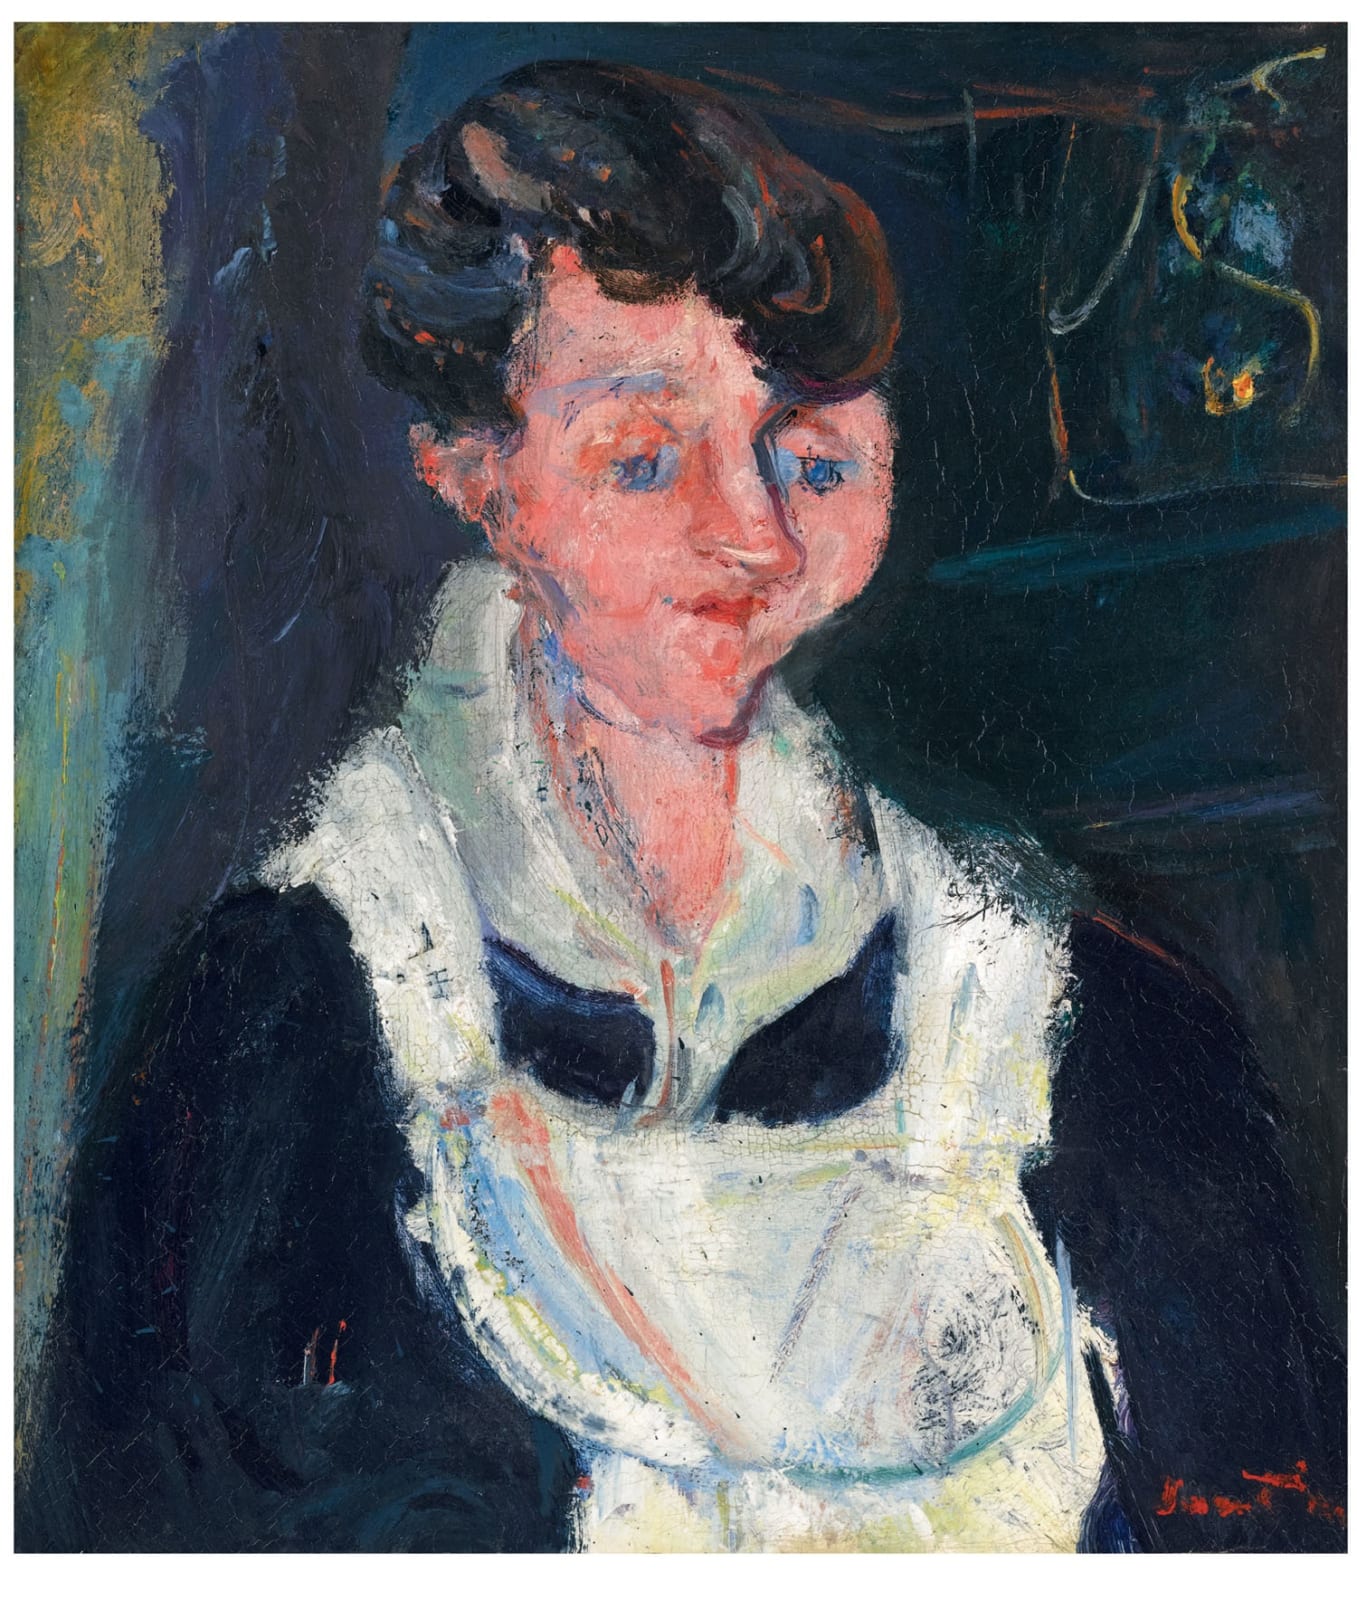 Хаим Сутин(1893-1943) Jeune Servante (Ожидающая служанка, также известная как La Soubrette) ок. 1933 г. Масло на холсте 46,5 x 40,5 см Ben Uri Коллекция Чтобы увидеть и узнать больше об этом художнике, нажмите здесь.